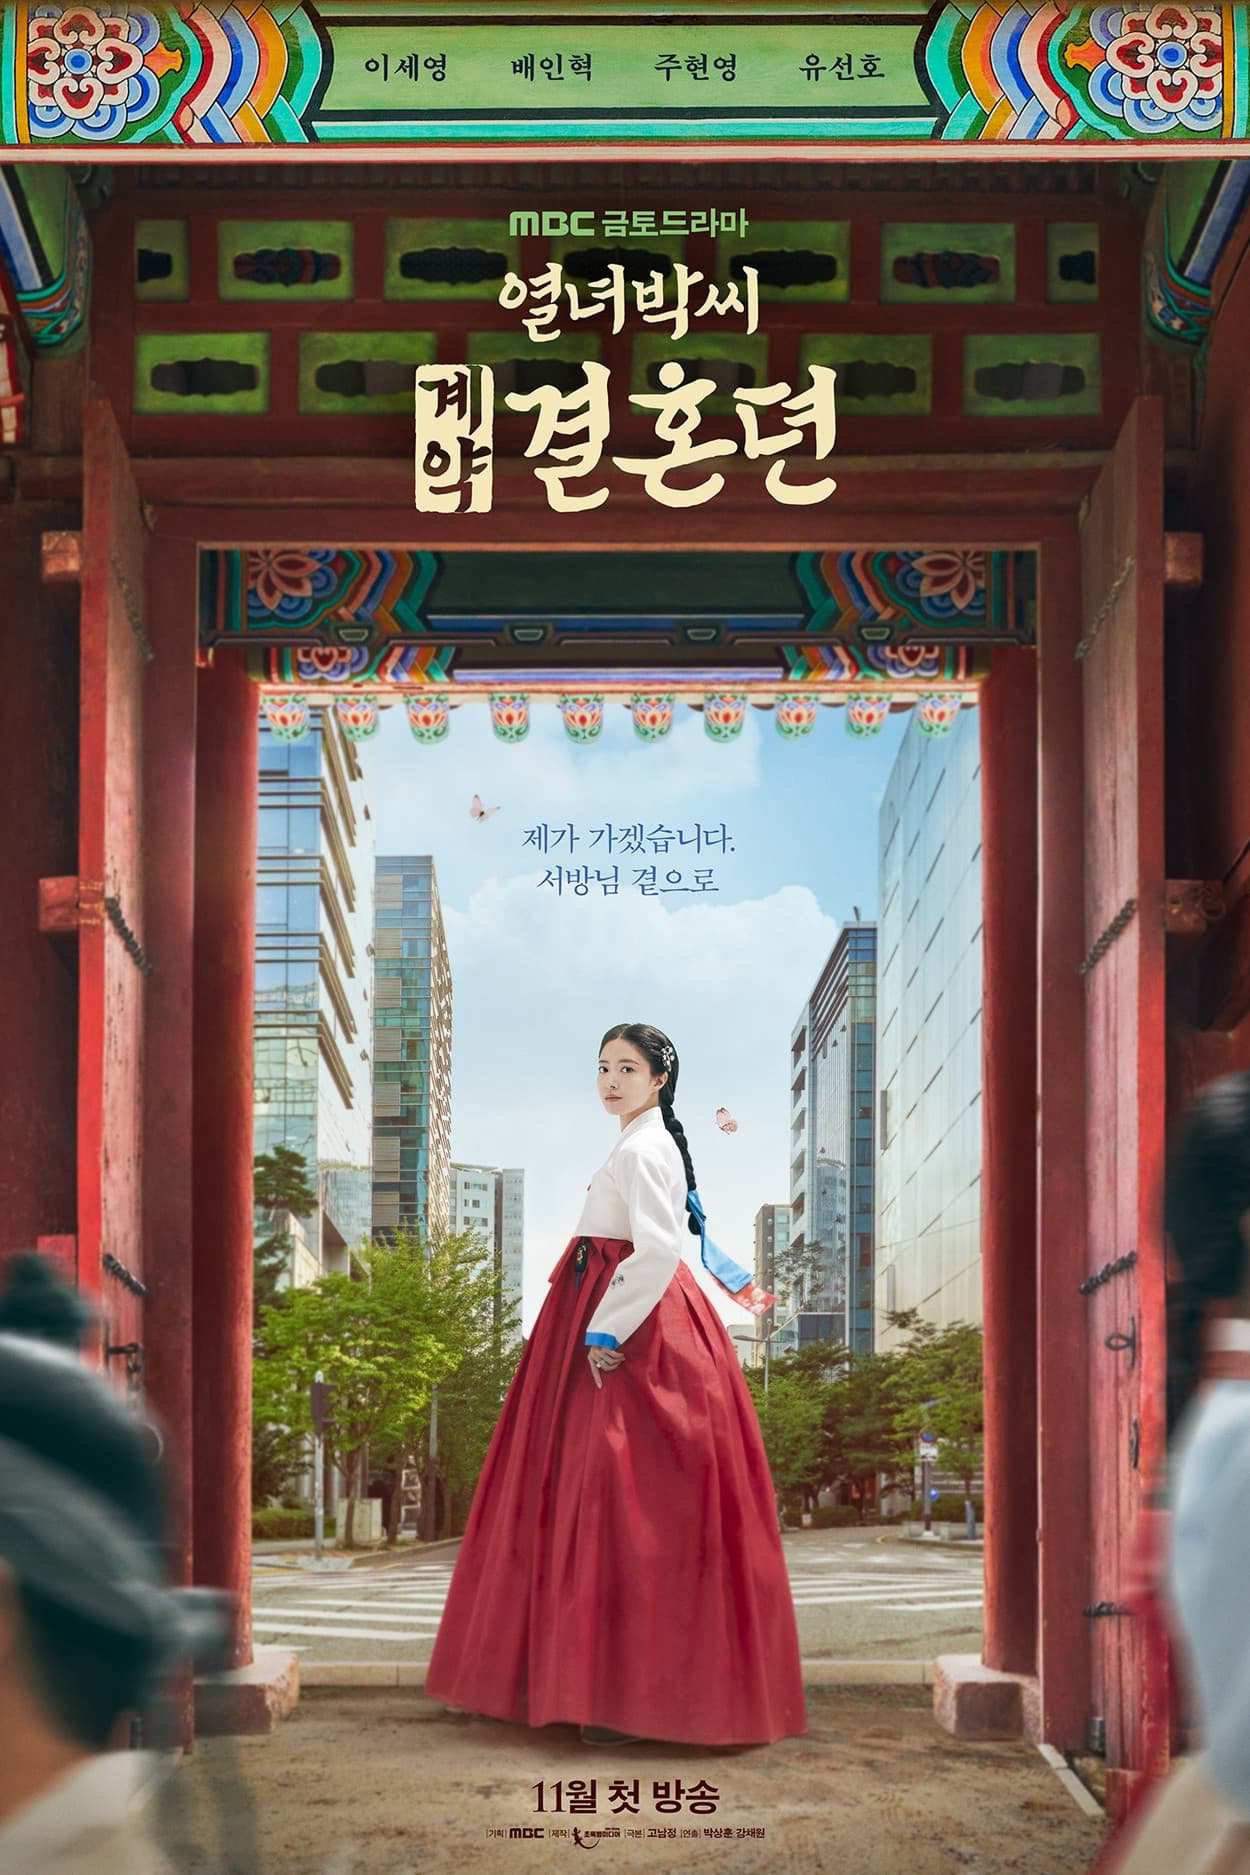 Poster Phim Hợp Đồng Hôn Nhân (The Story of Park's Marriage Contract)